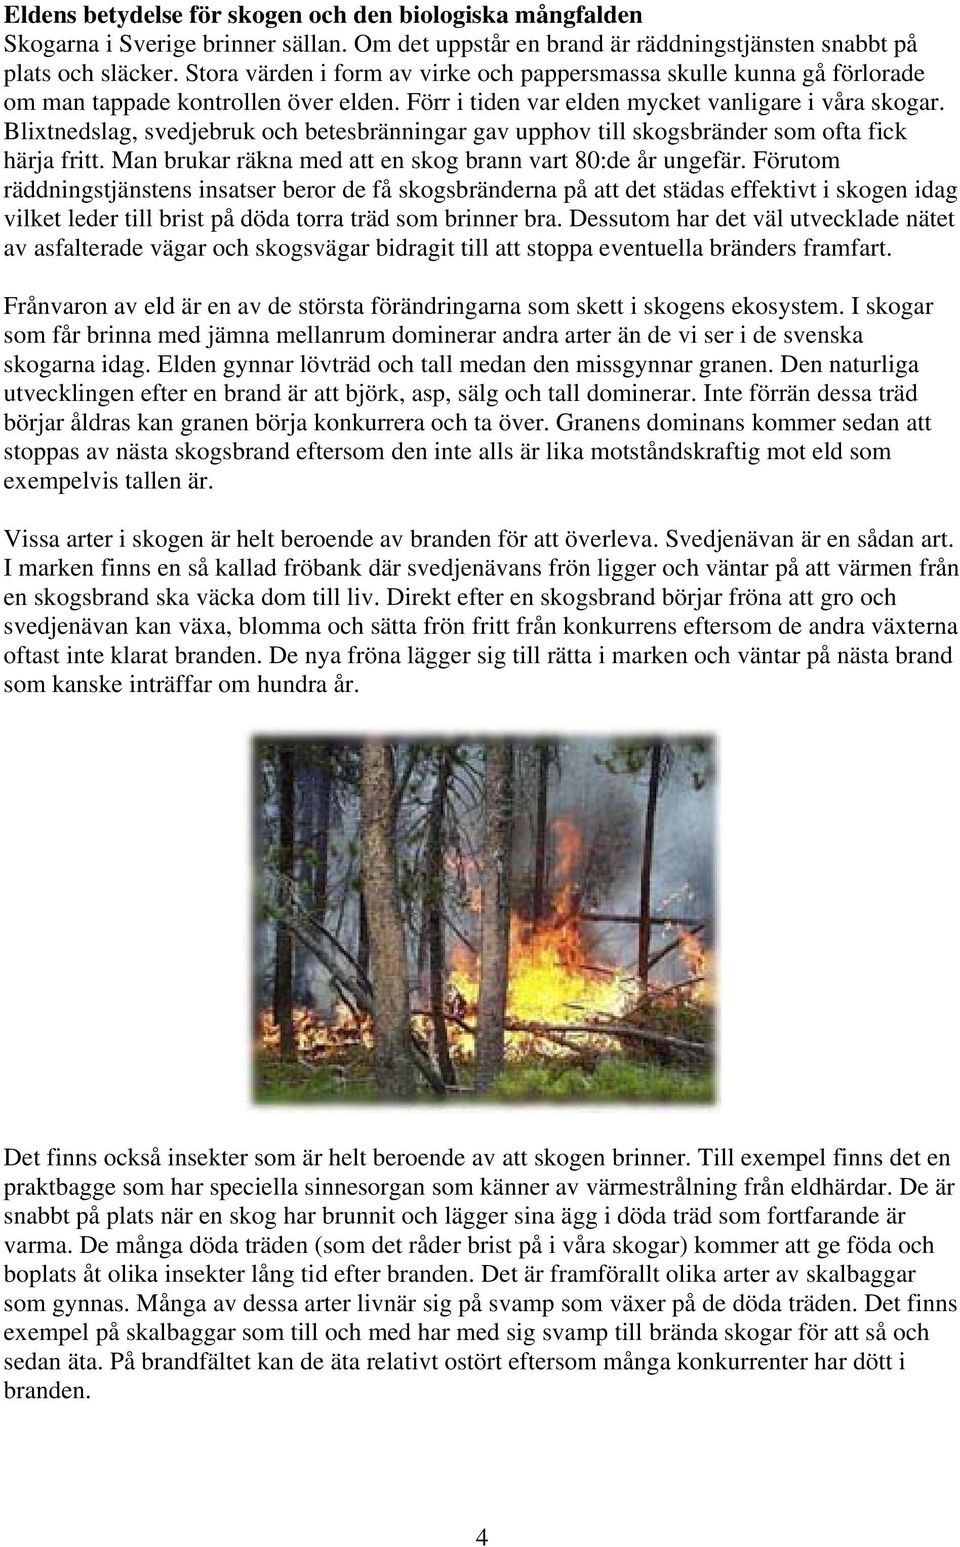 Blixtnedslag, svedjebruk och betesbränningar gav upphov till skogsbränder som ofta fick härja fritt. Man brukar räkna med att en skog brann vart 80:de år ungefär.